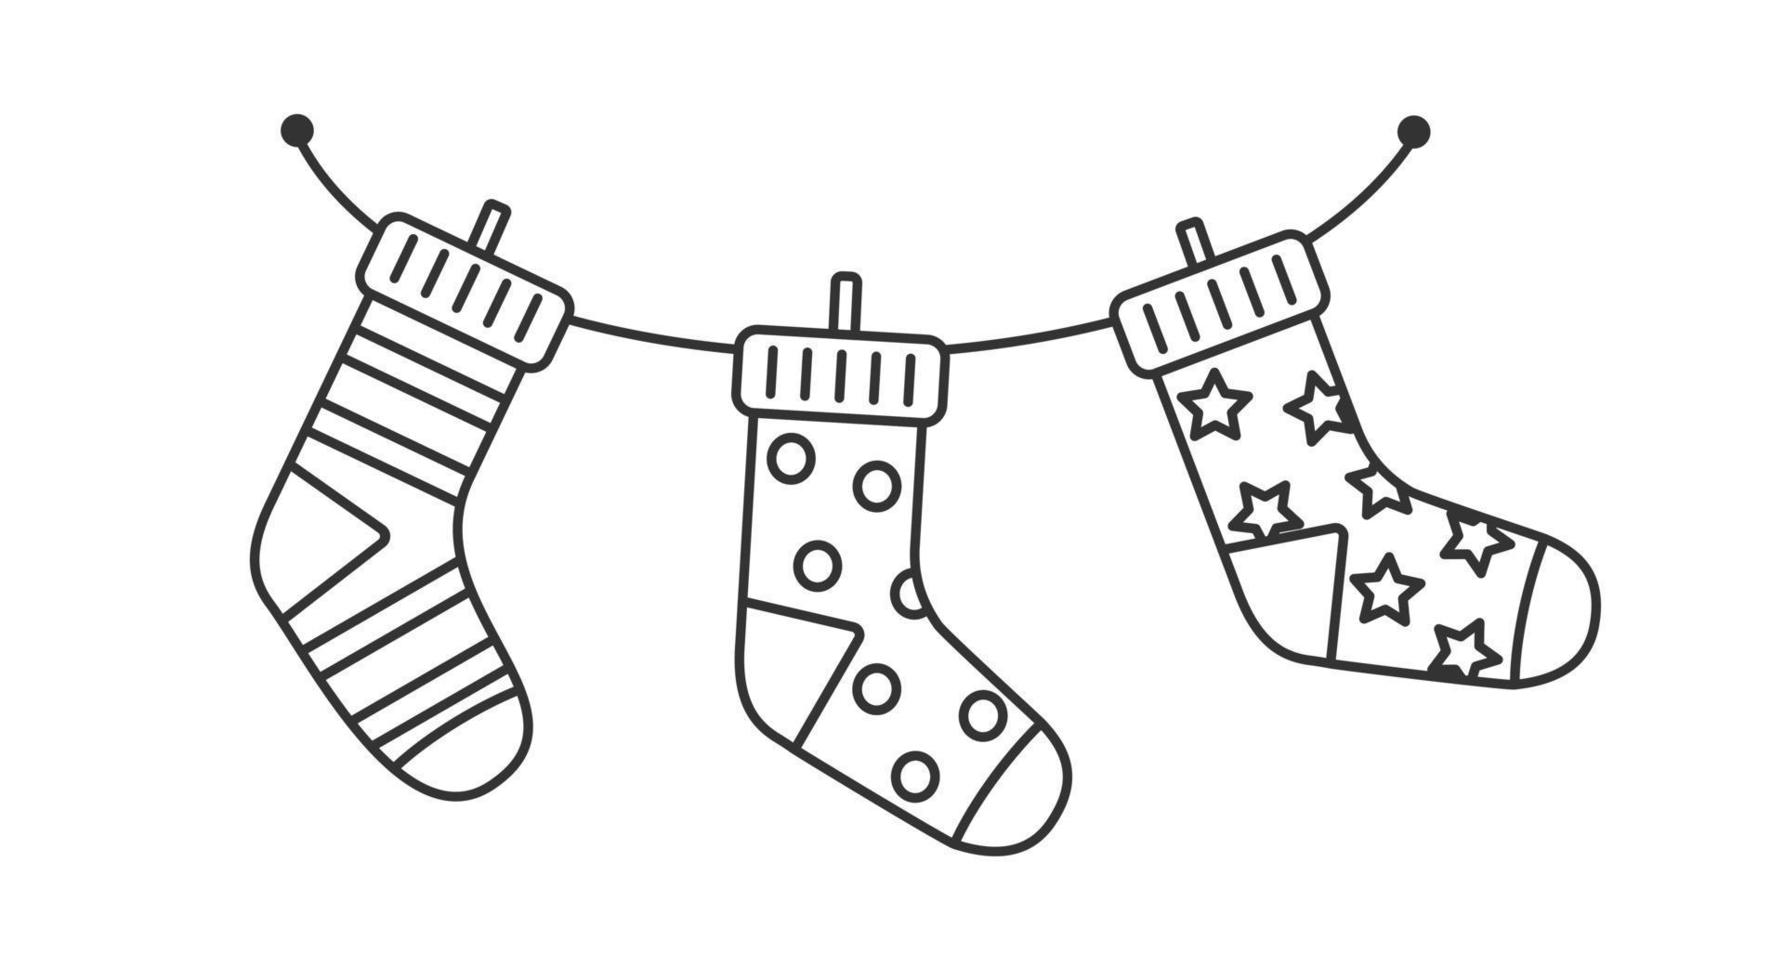 Vector black and white illustration. Children's Christmas socks